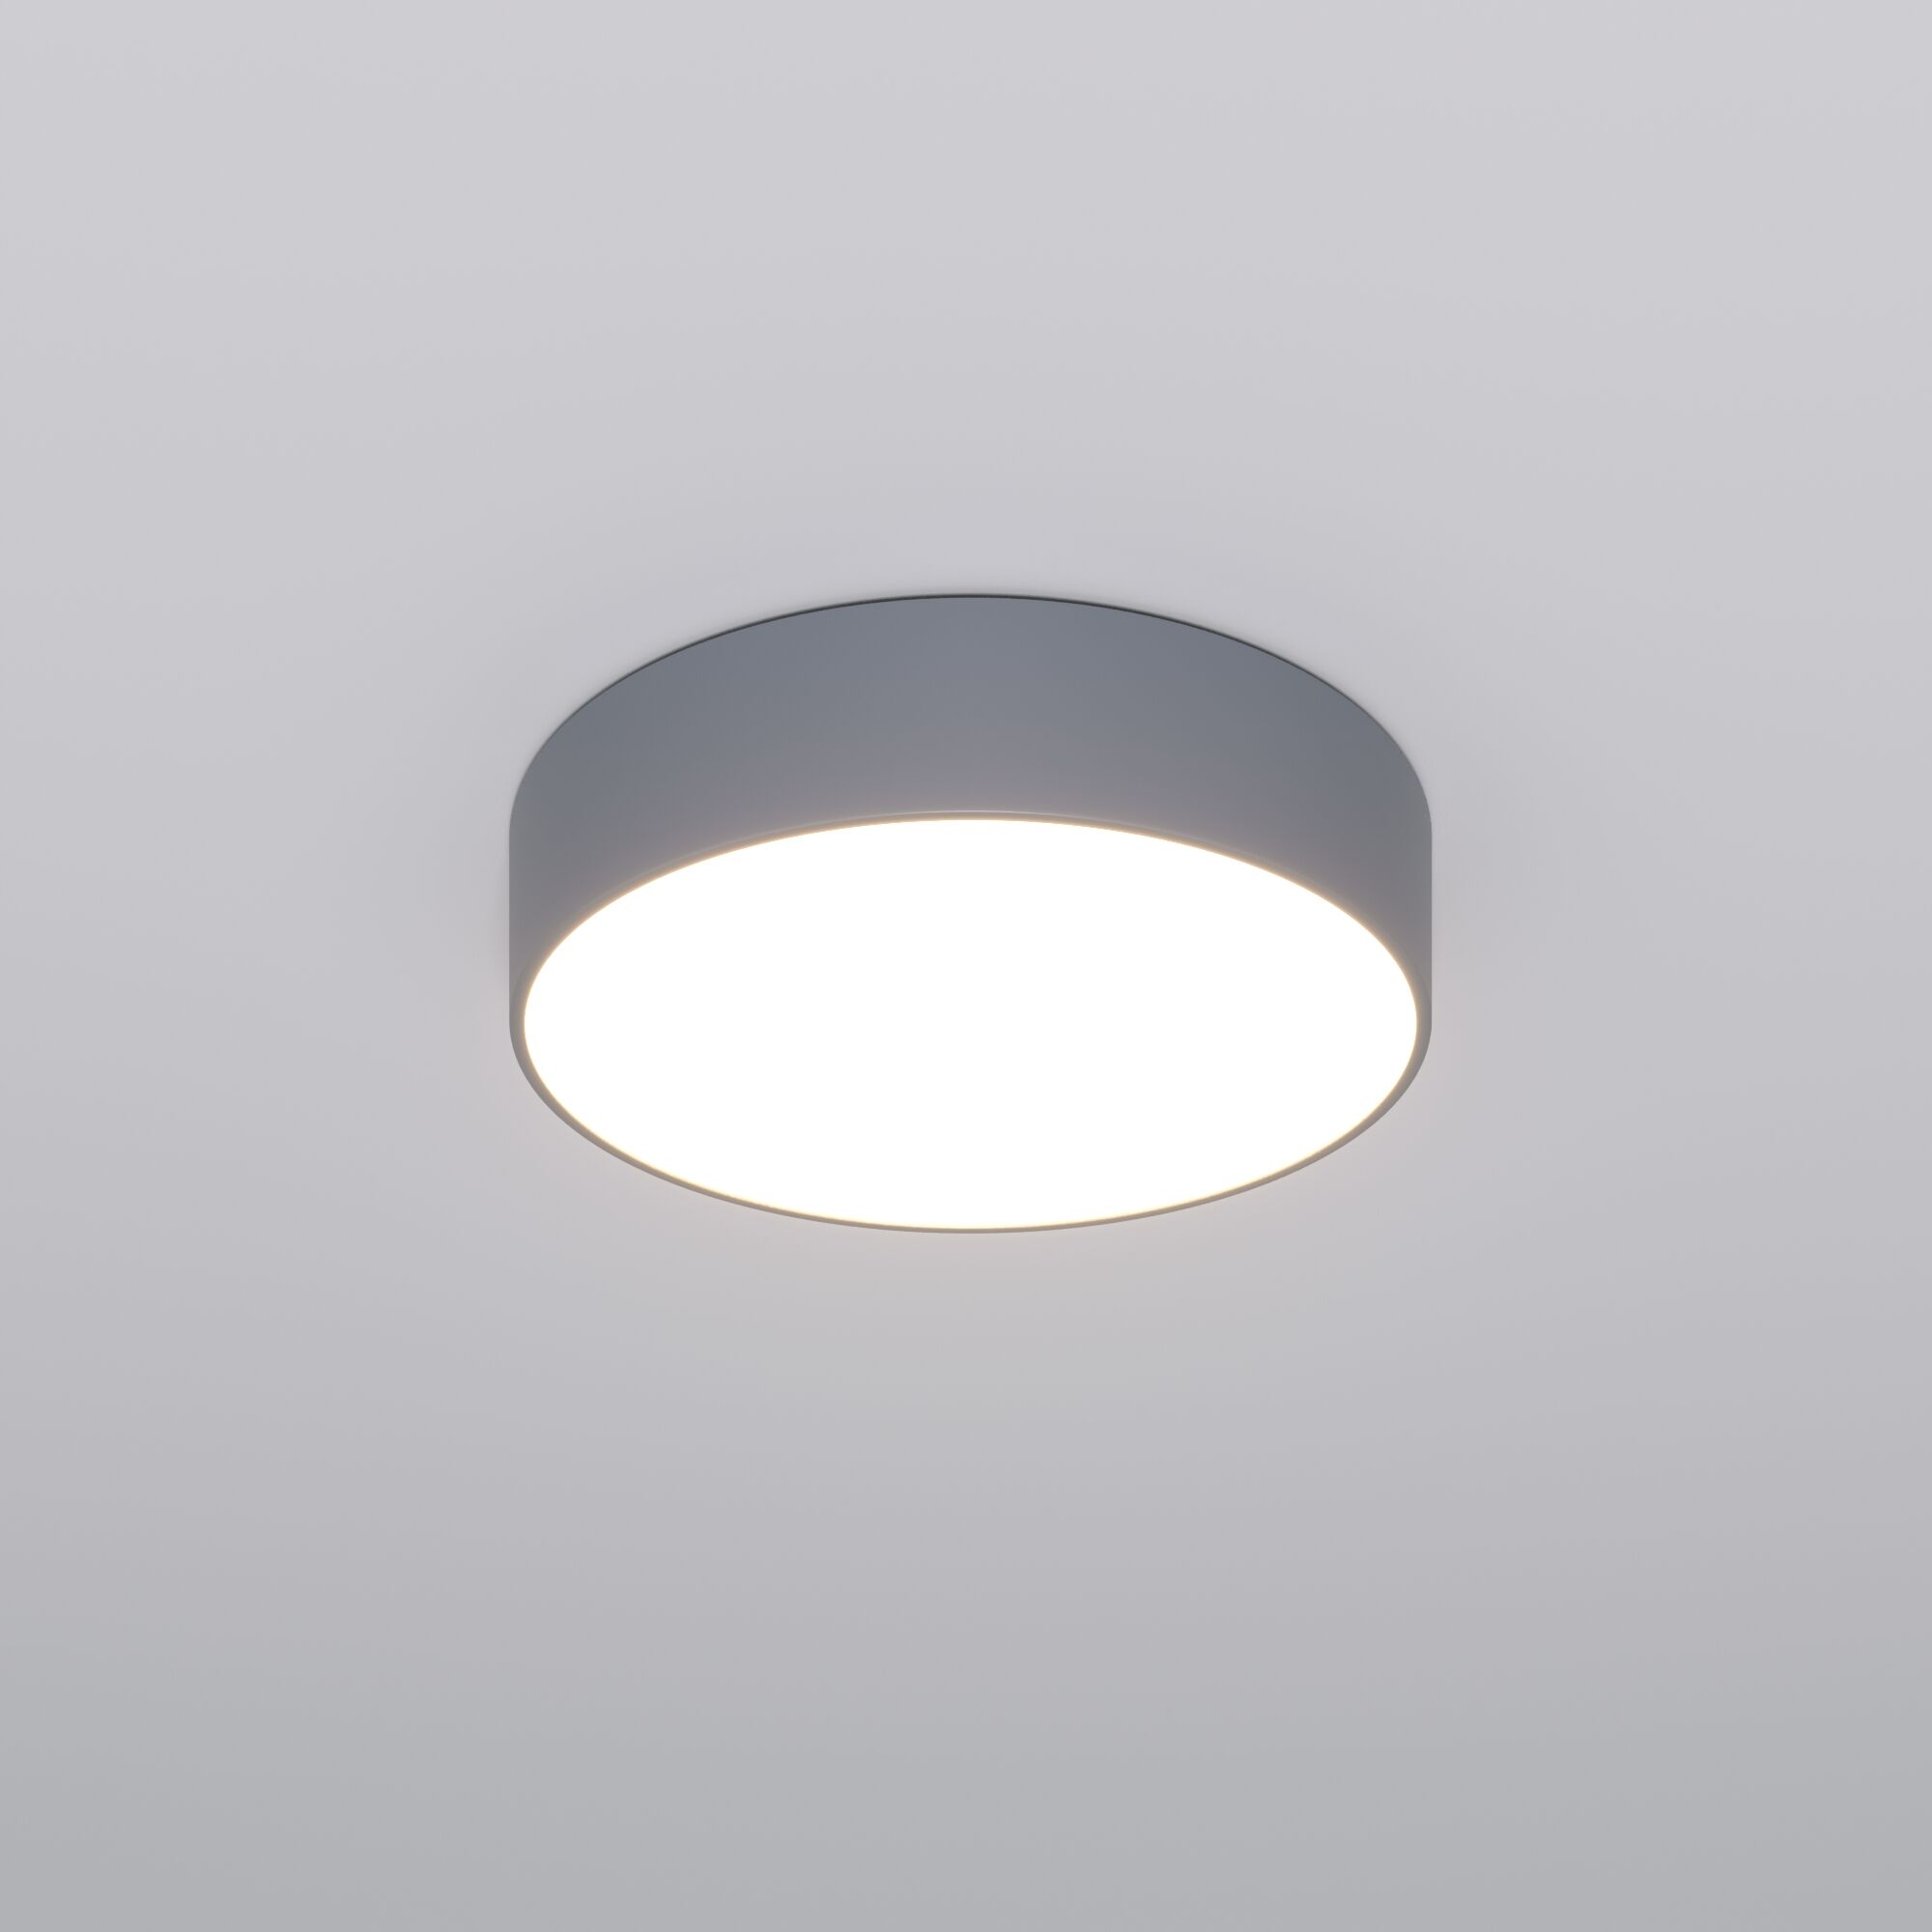 Потолочный светодиодный светильник с регулировкой яркости и цветовой температуры Eurosvet Entire 90318/1 серый. Фото 2